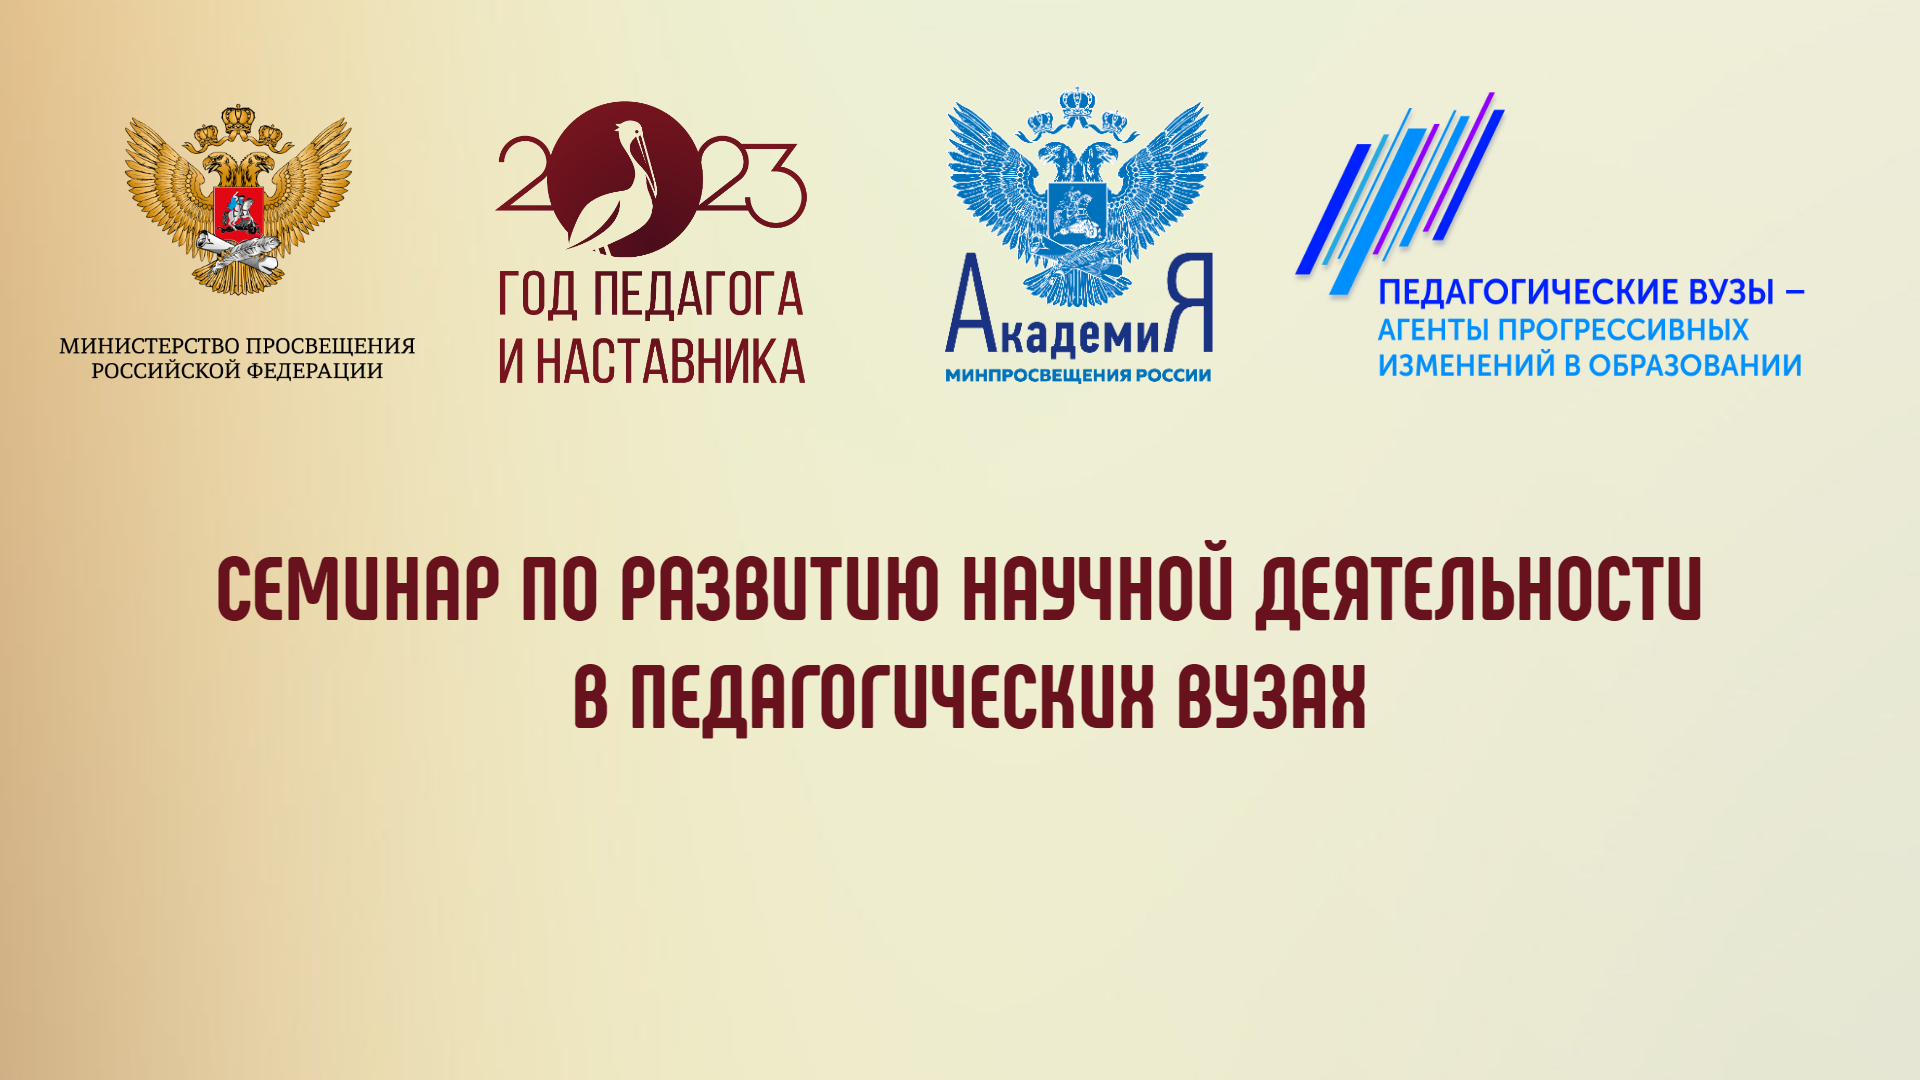 В Академии Минпросвещения России обсудят вопросы развития научной деятельности в педагогических вузах